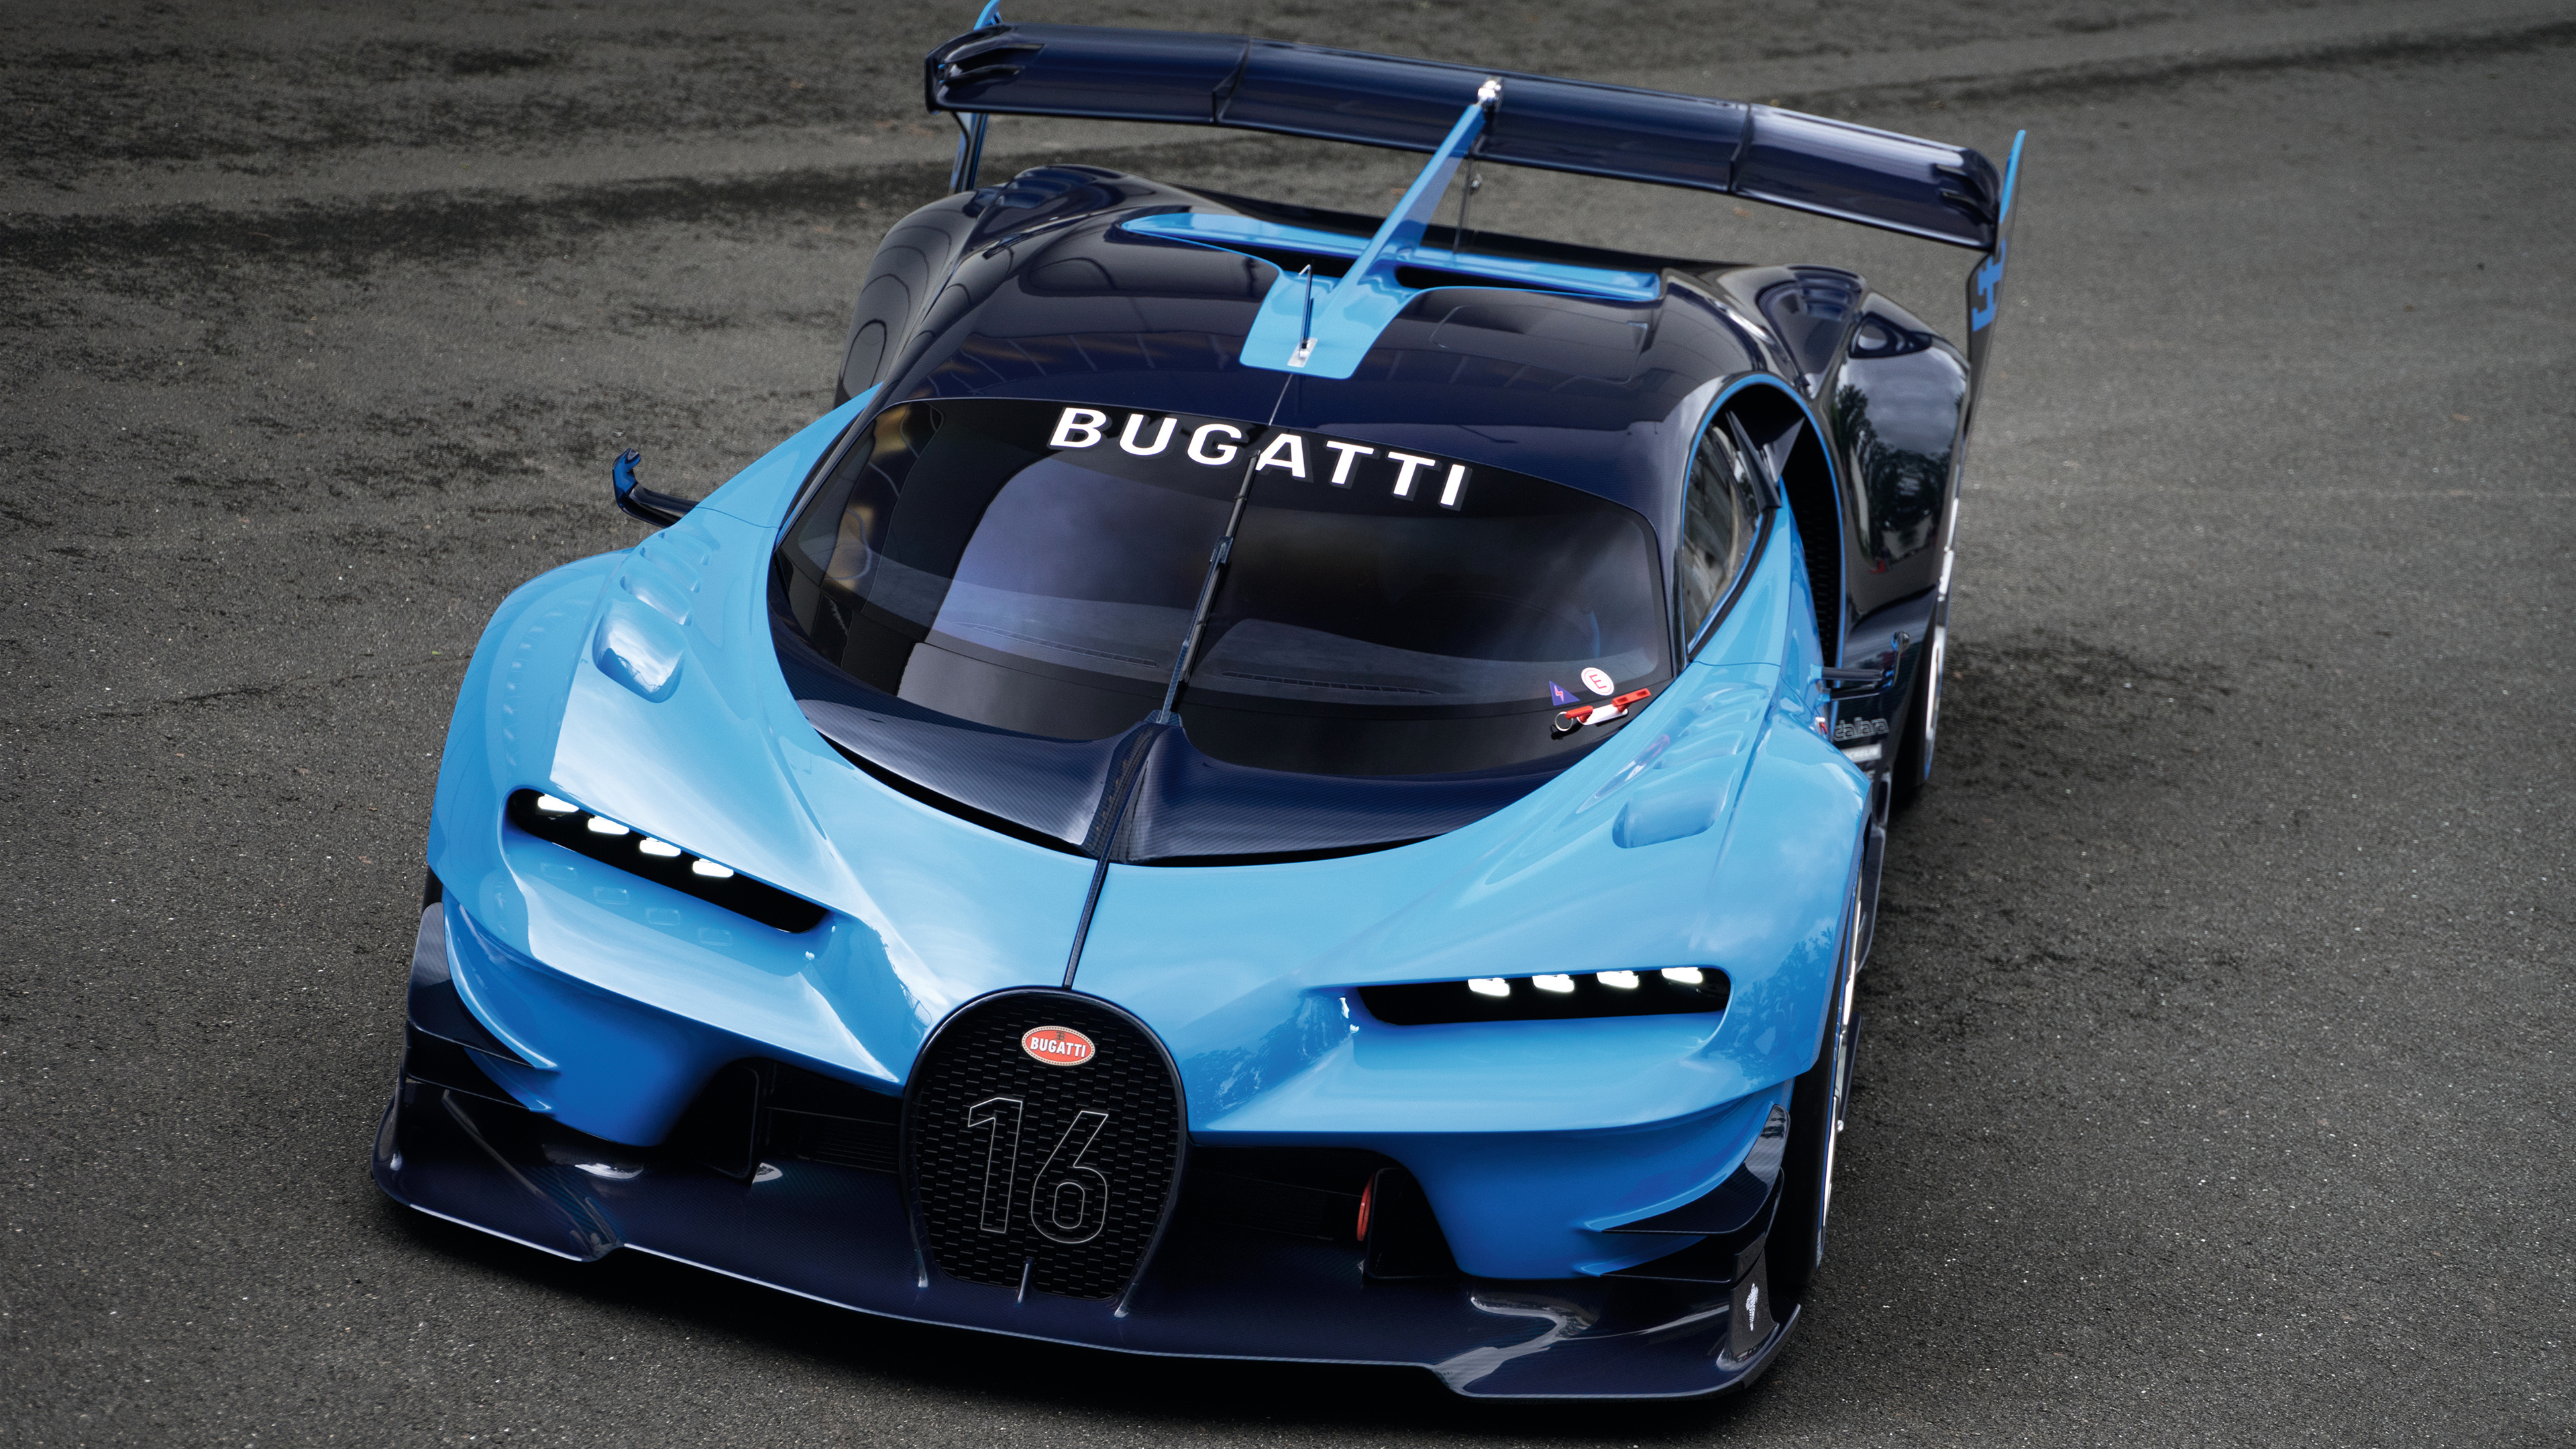 2015 Bugatti Vision Gran Turismo 4 Wallpaper | HD Car Wallpapers | ID #5730